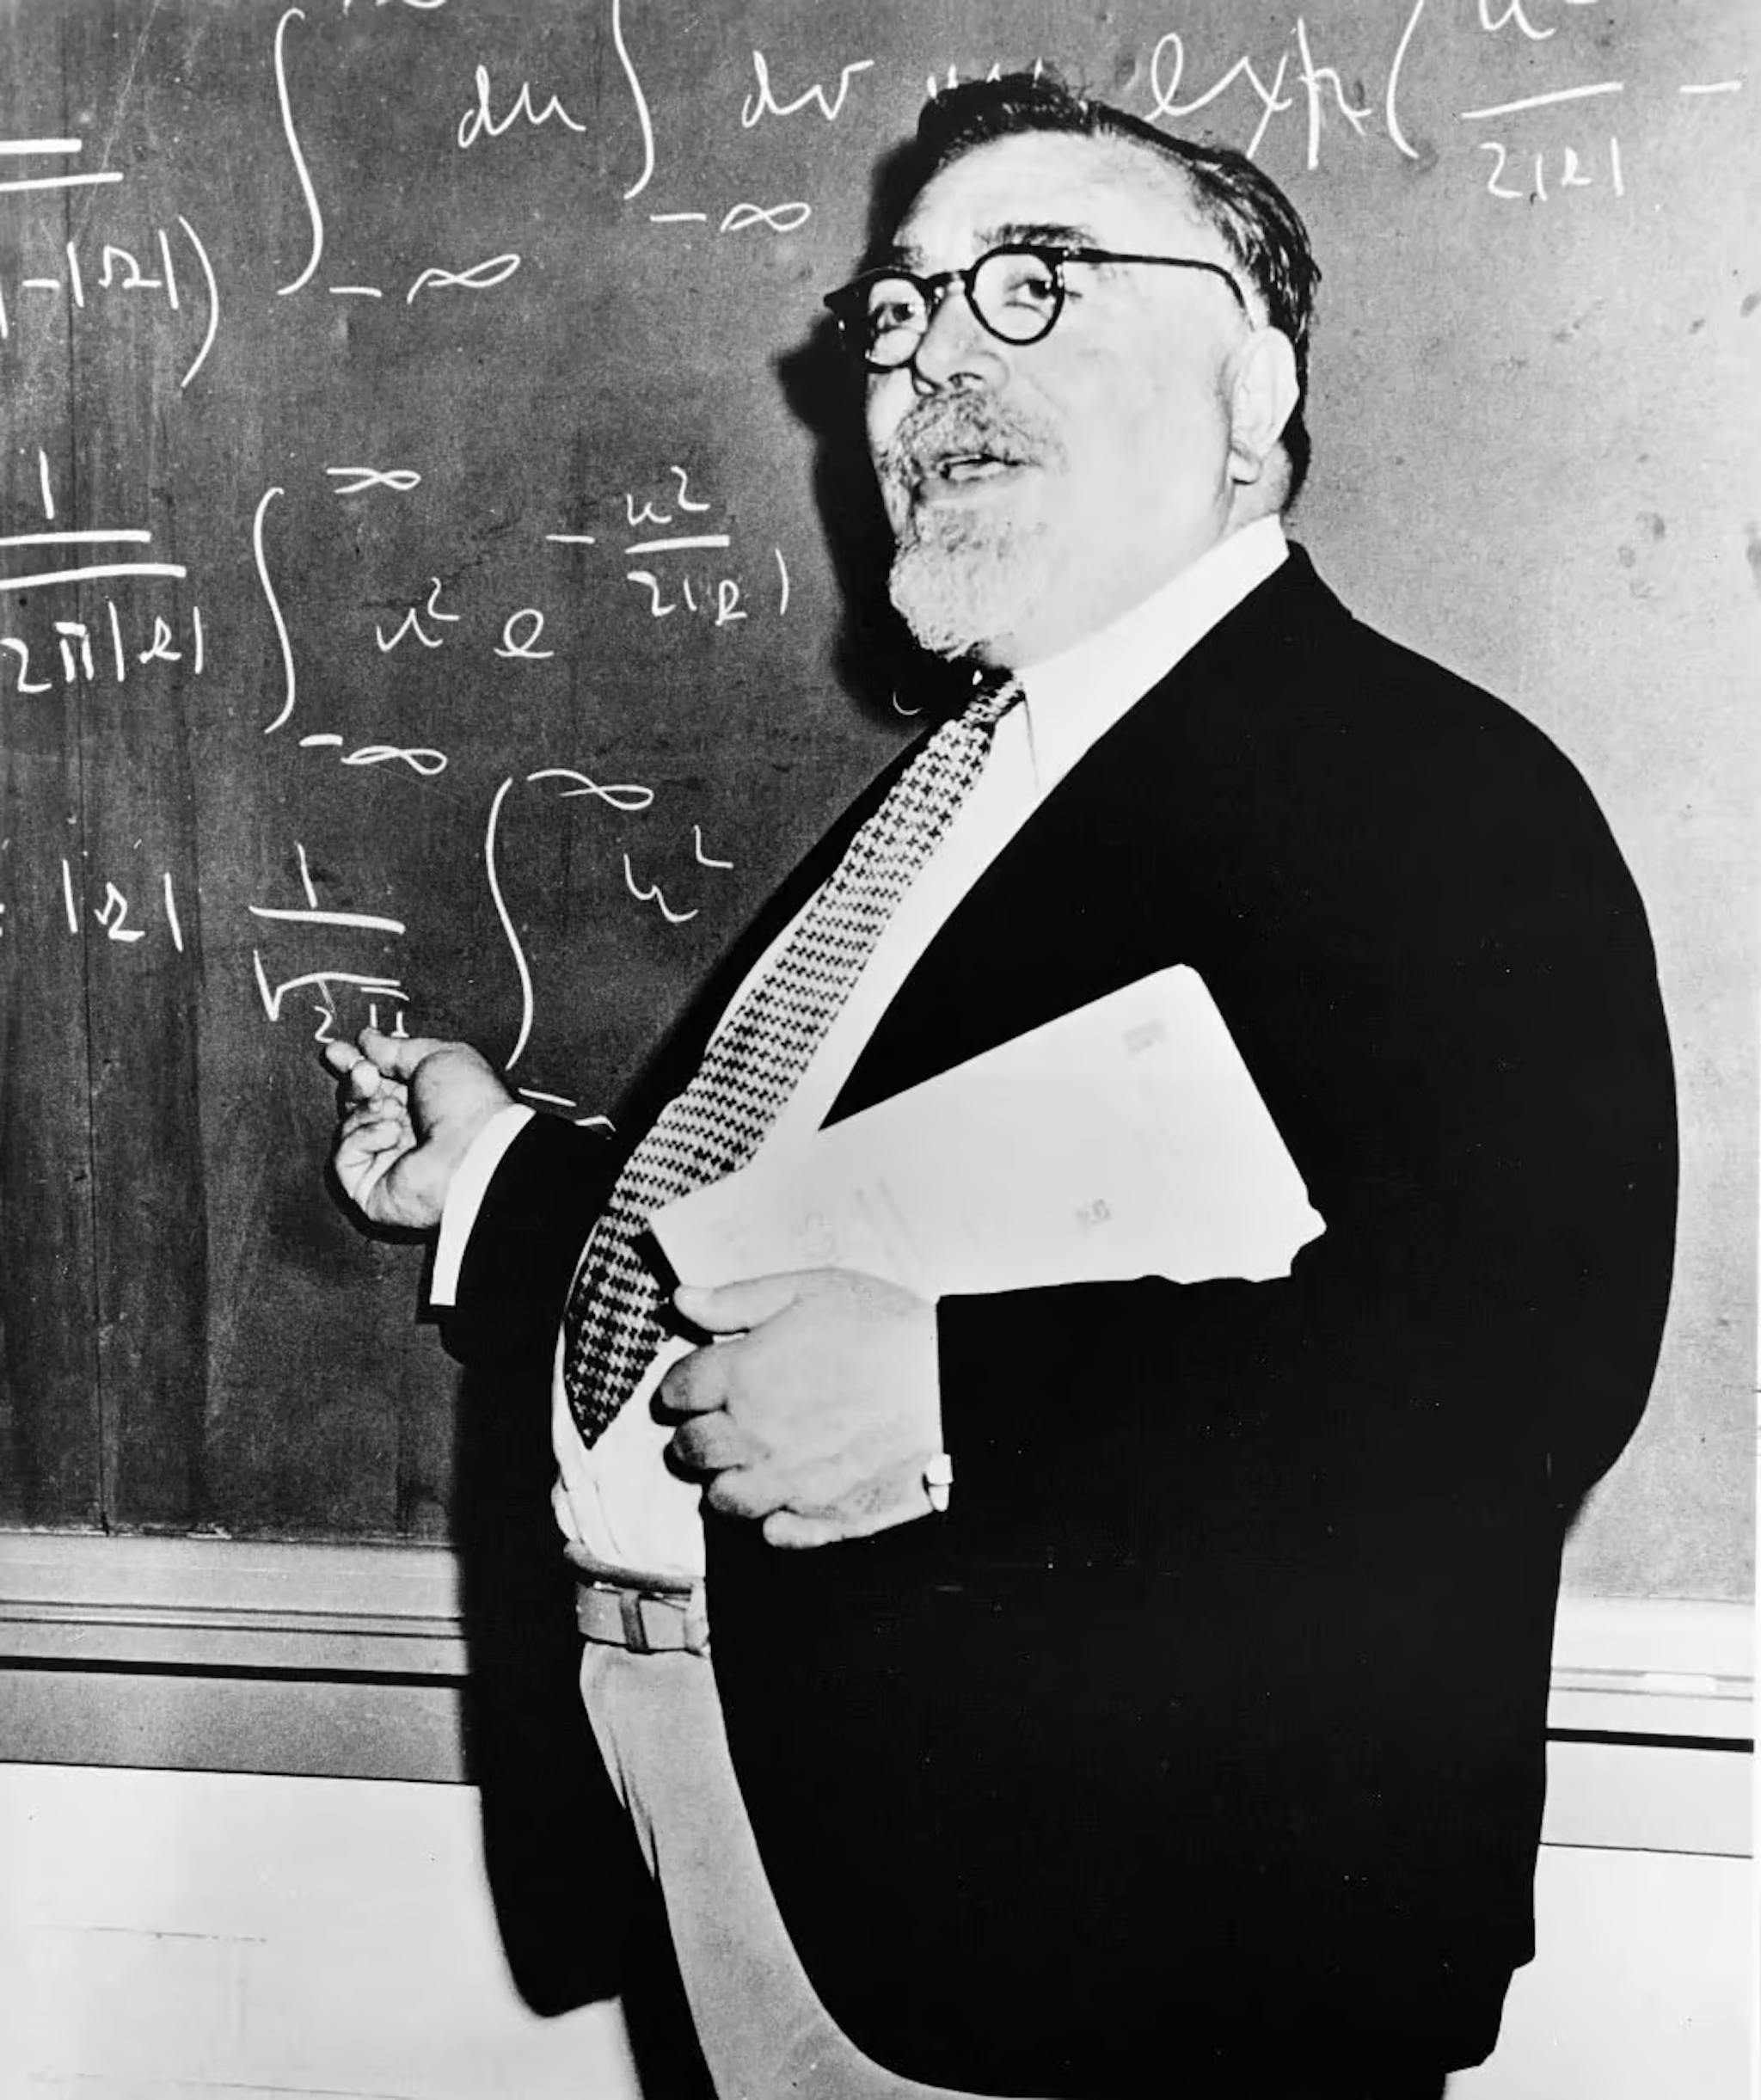 Norbert Wiener (1894-1964) は、確率過程、電子工学、および制御システムに多大な貢献をしました。彼はサイバネティクスを創始し、フィードバック メカニズムがインテリジェントな動作につながると理論化し、現代の AI の基礎を築きました。